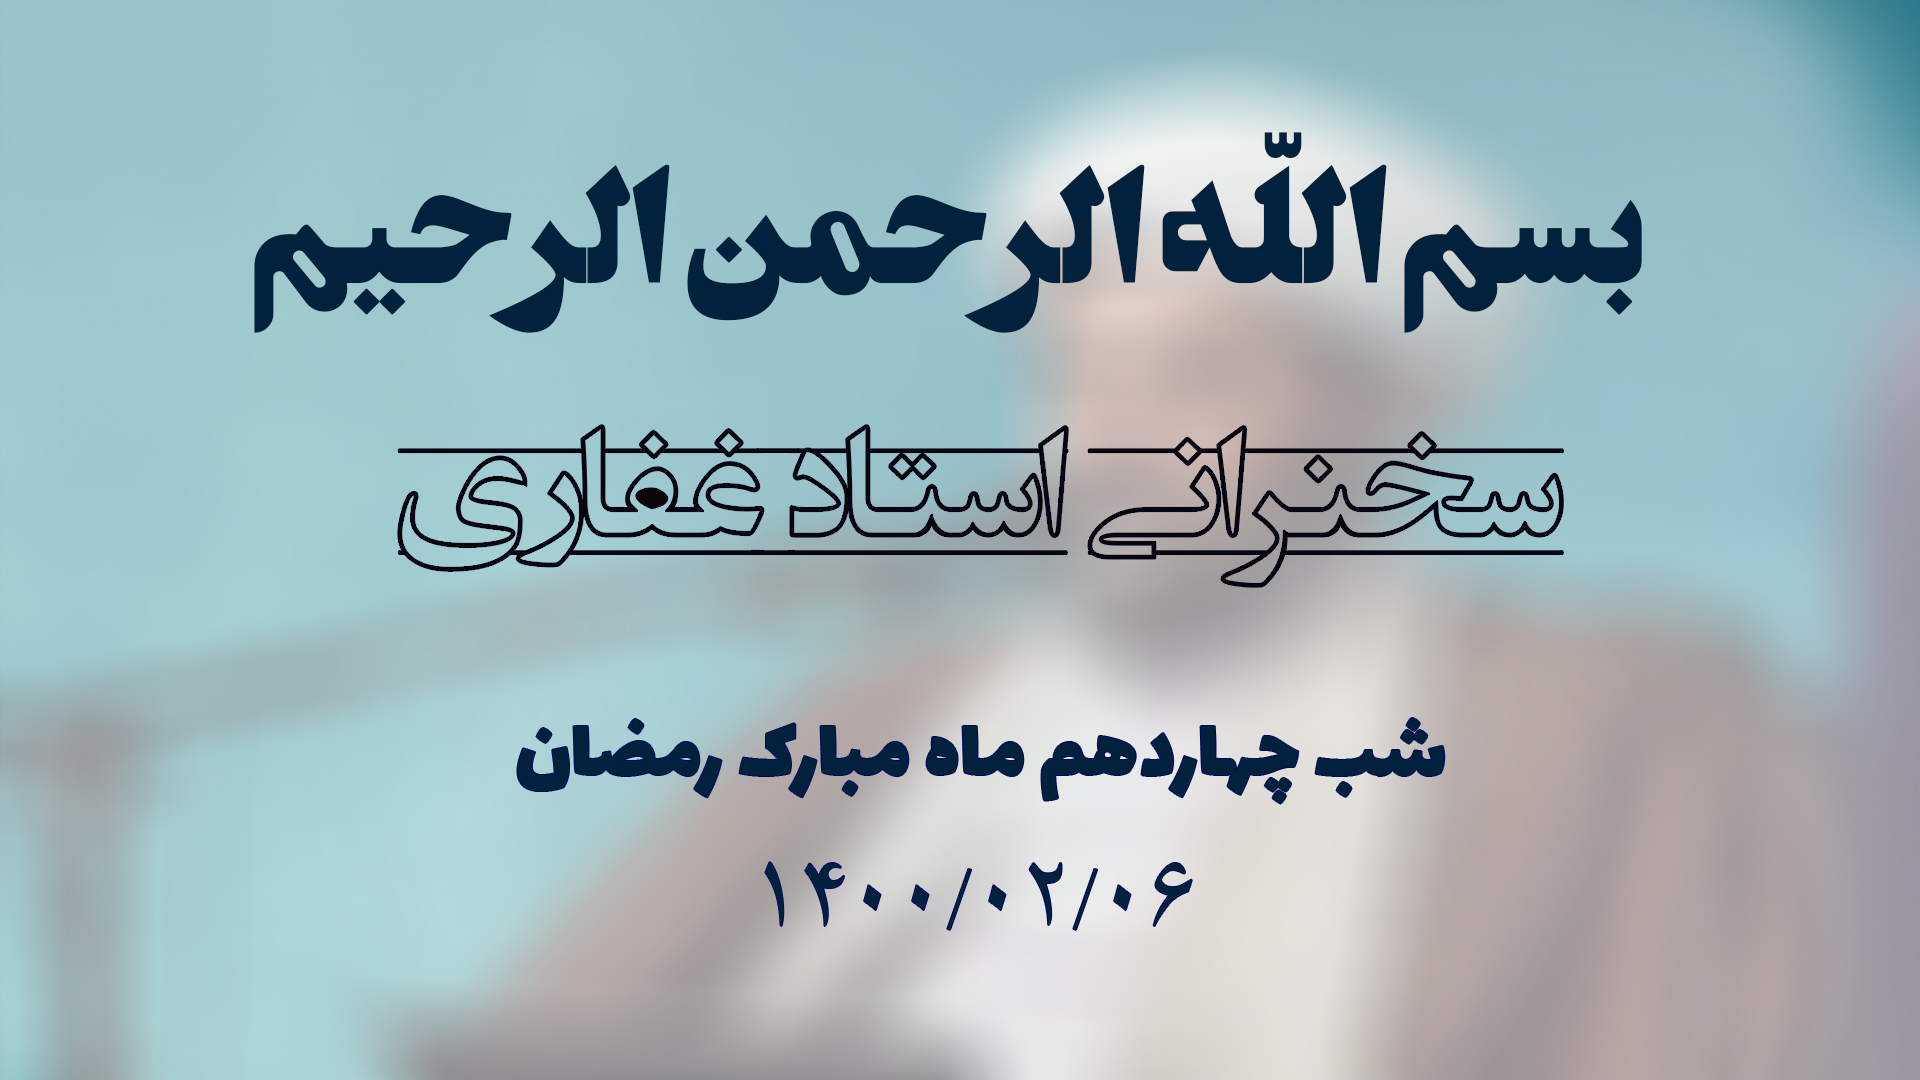 سخنرانی استاد غفاری ، شب چهاردهم ماه مبارک رمضان ۱۴۰۰/۰۲/۰6